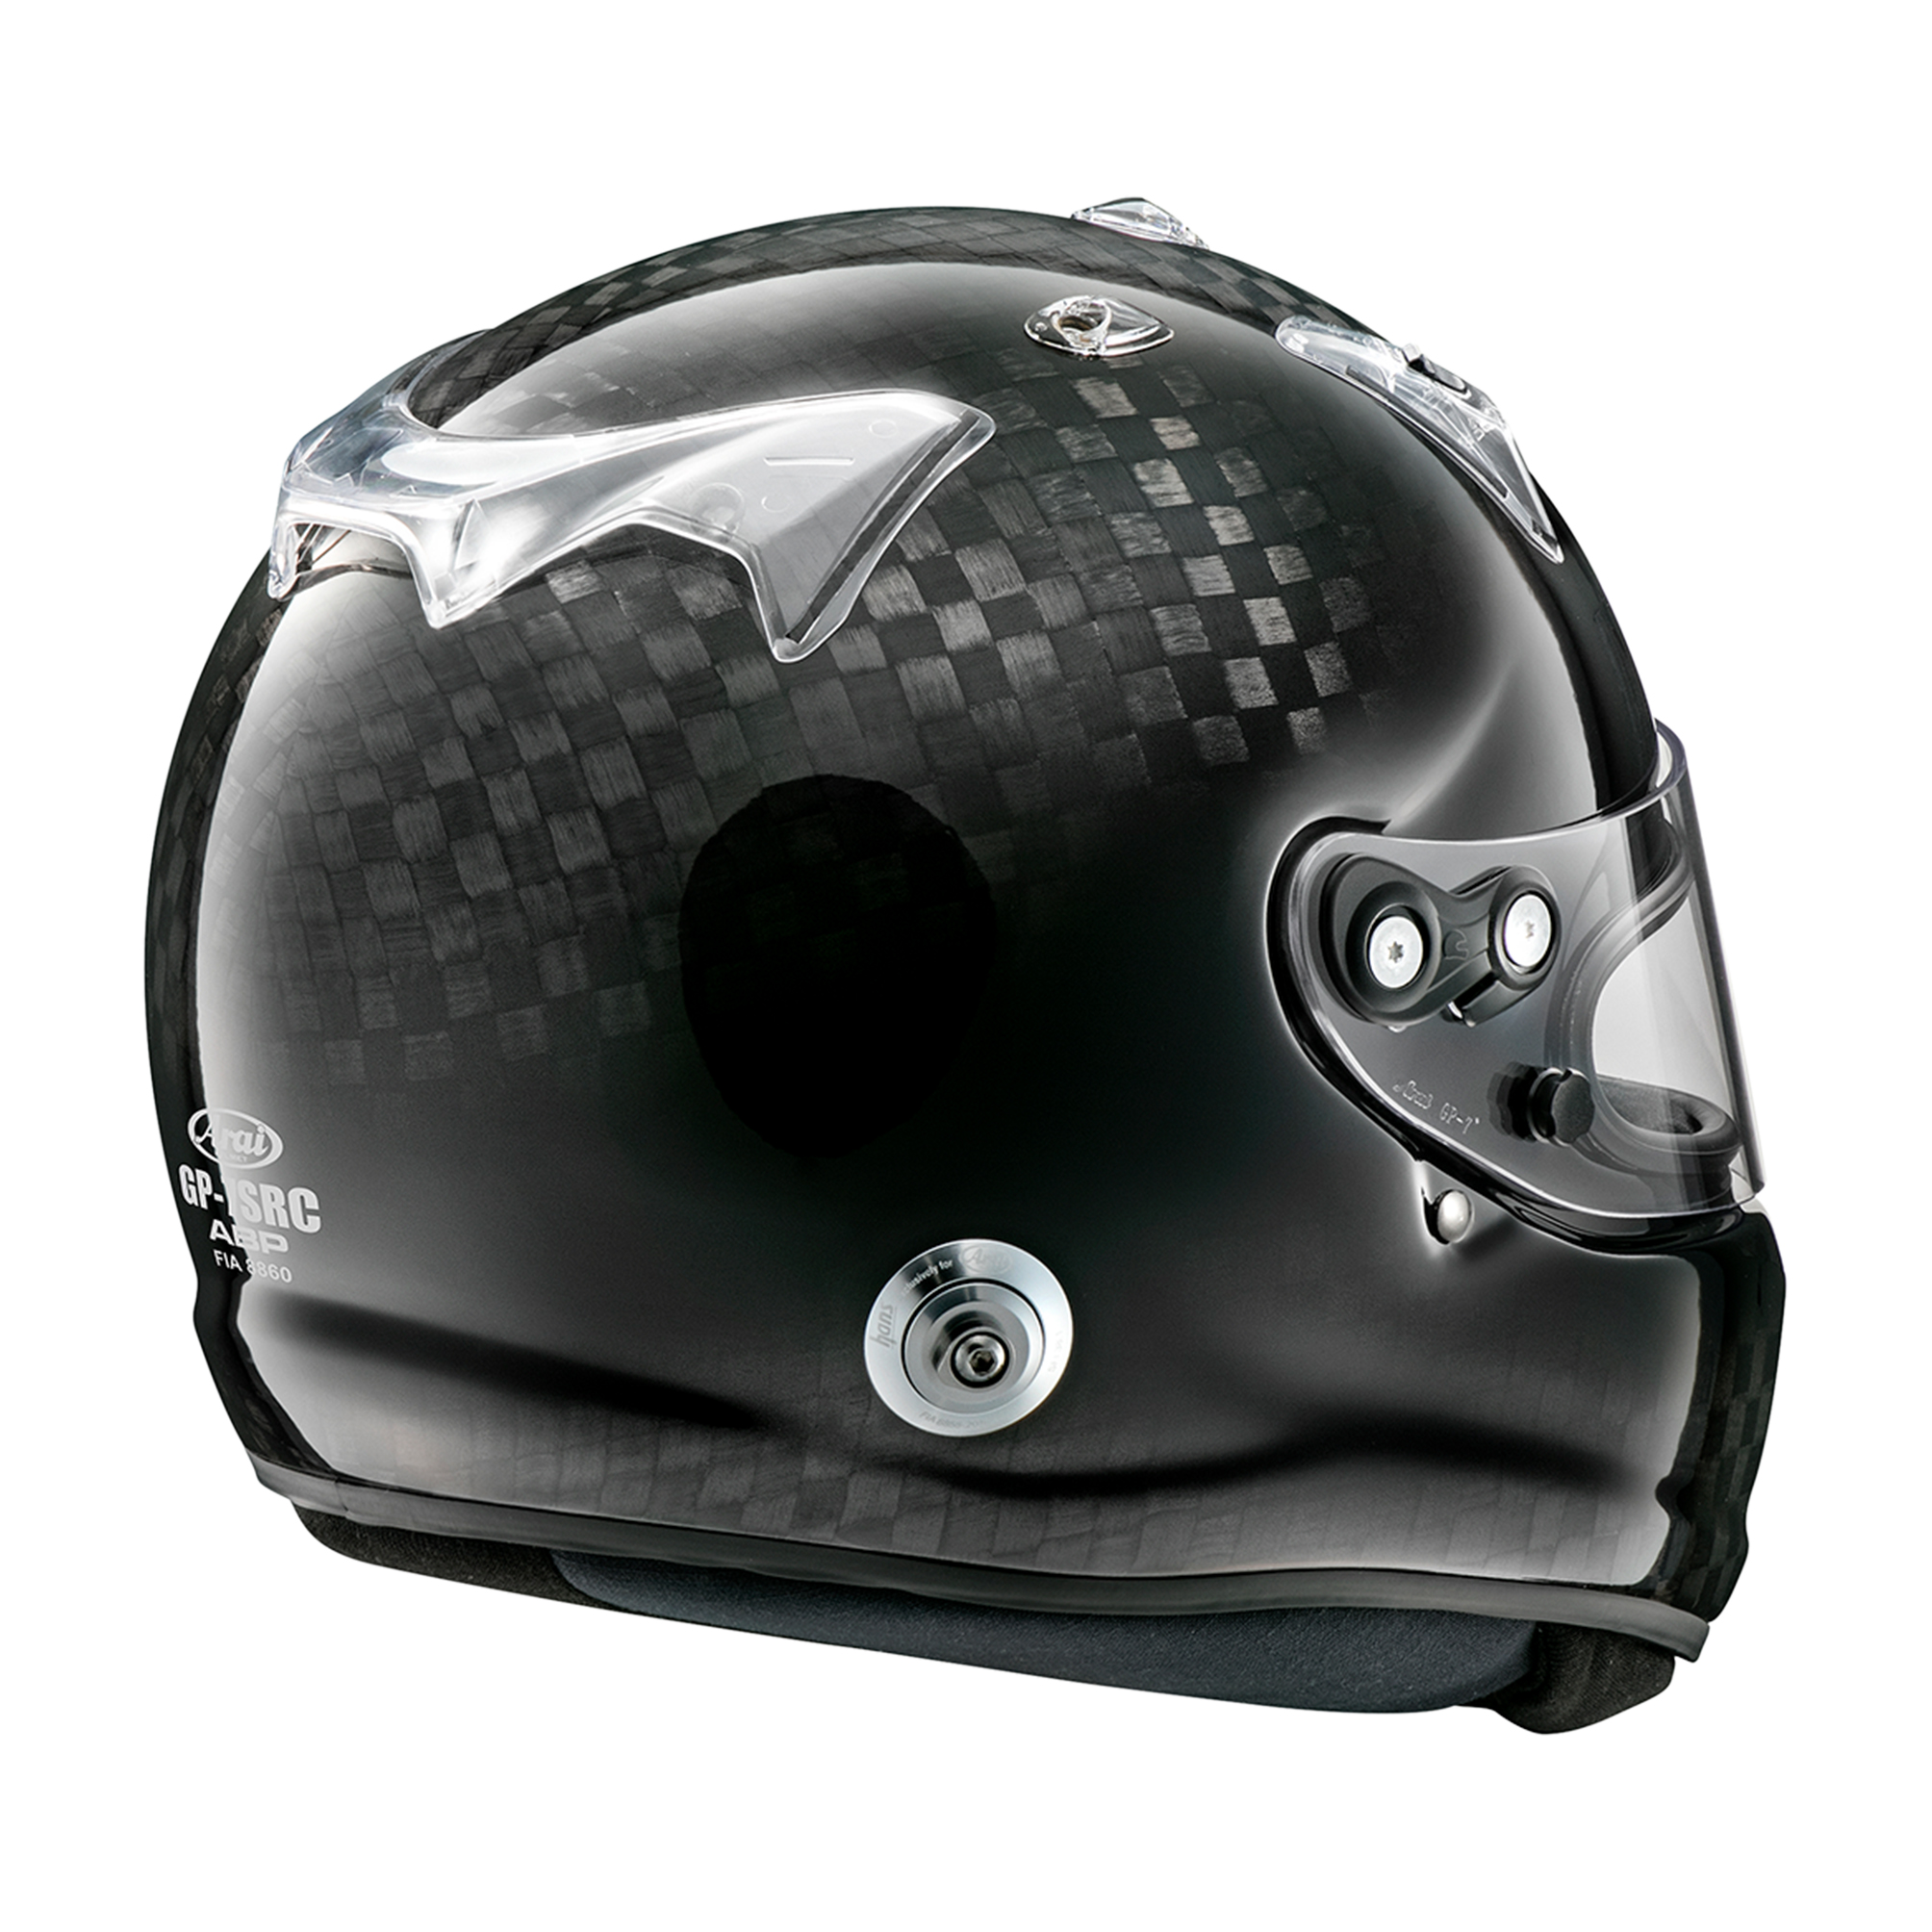 Køb din Arai GP-7 SCR eller ABP hjelm os til de bedste priser.